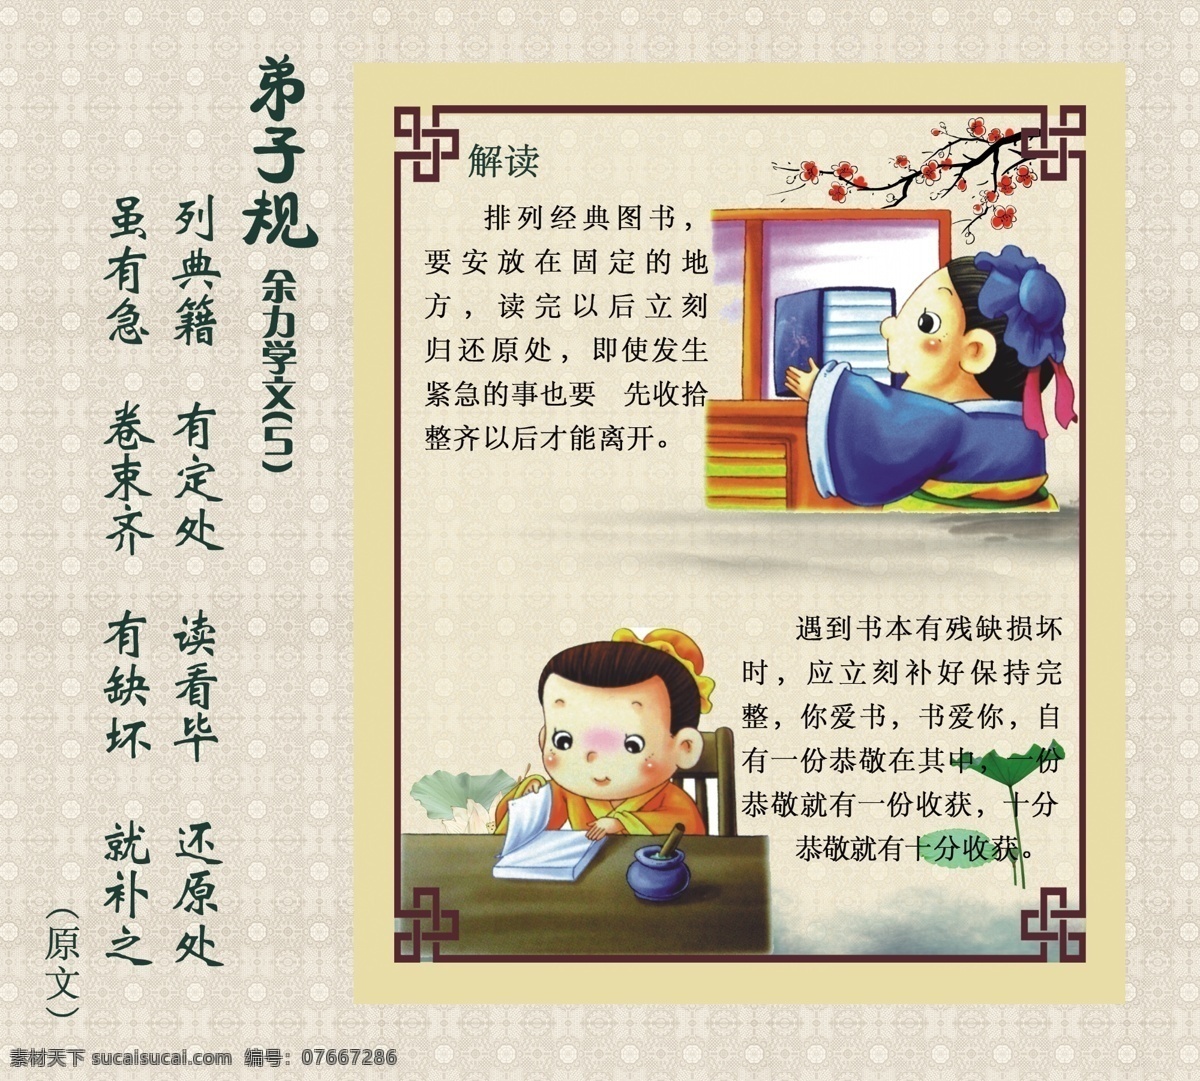 弟子规 圣人训 泛爱众 中国文化 古典 荷花 水墨 梅花 花边 画框 父母呼 荷叶 山 展板模板 广告设计模板 源文件